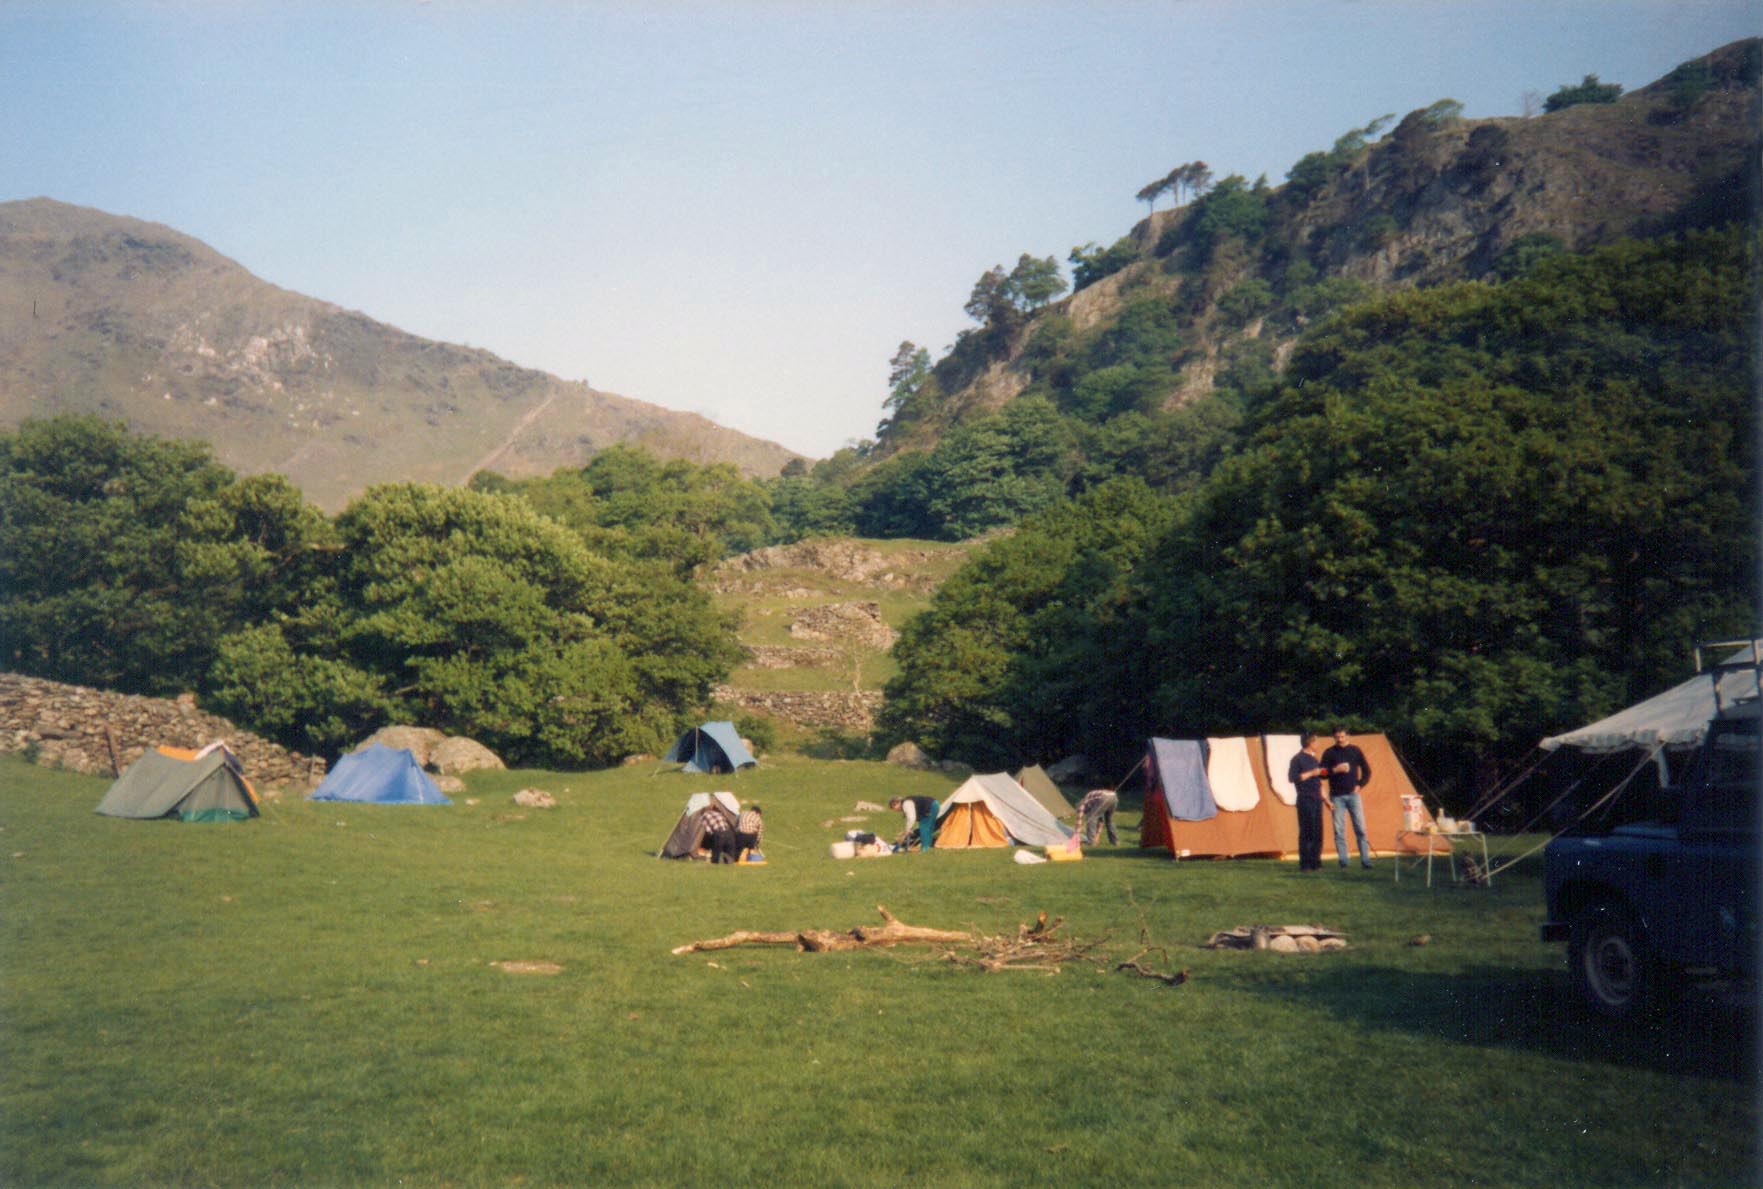 Preparations at base camp